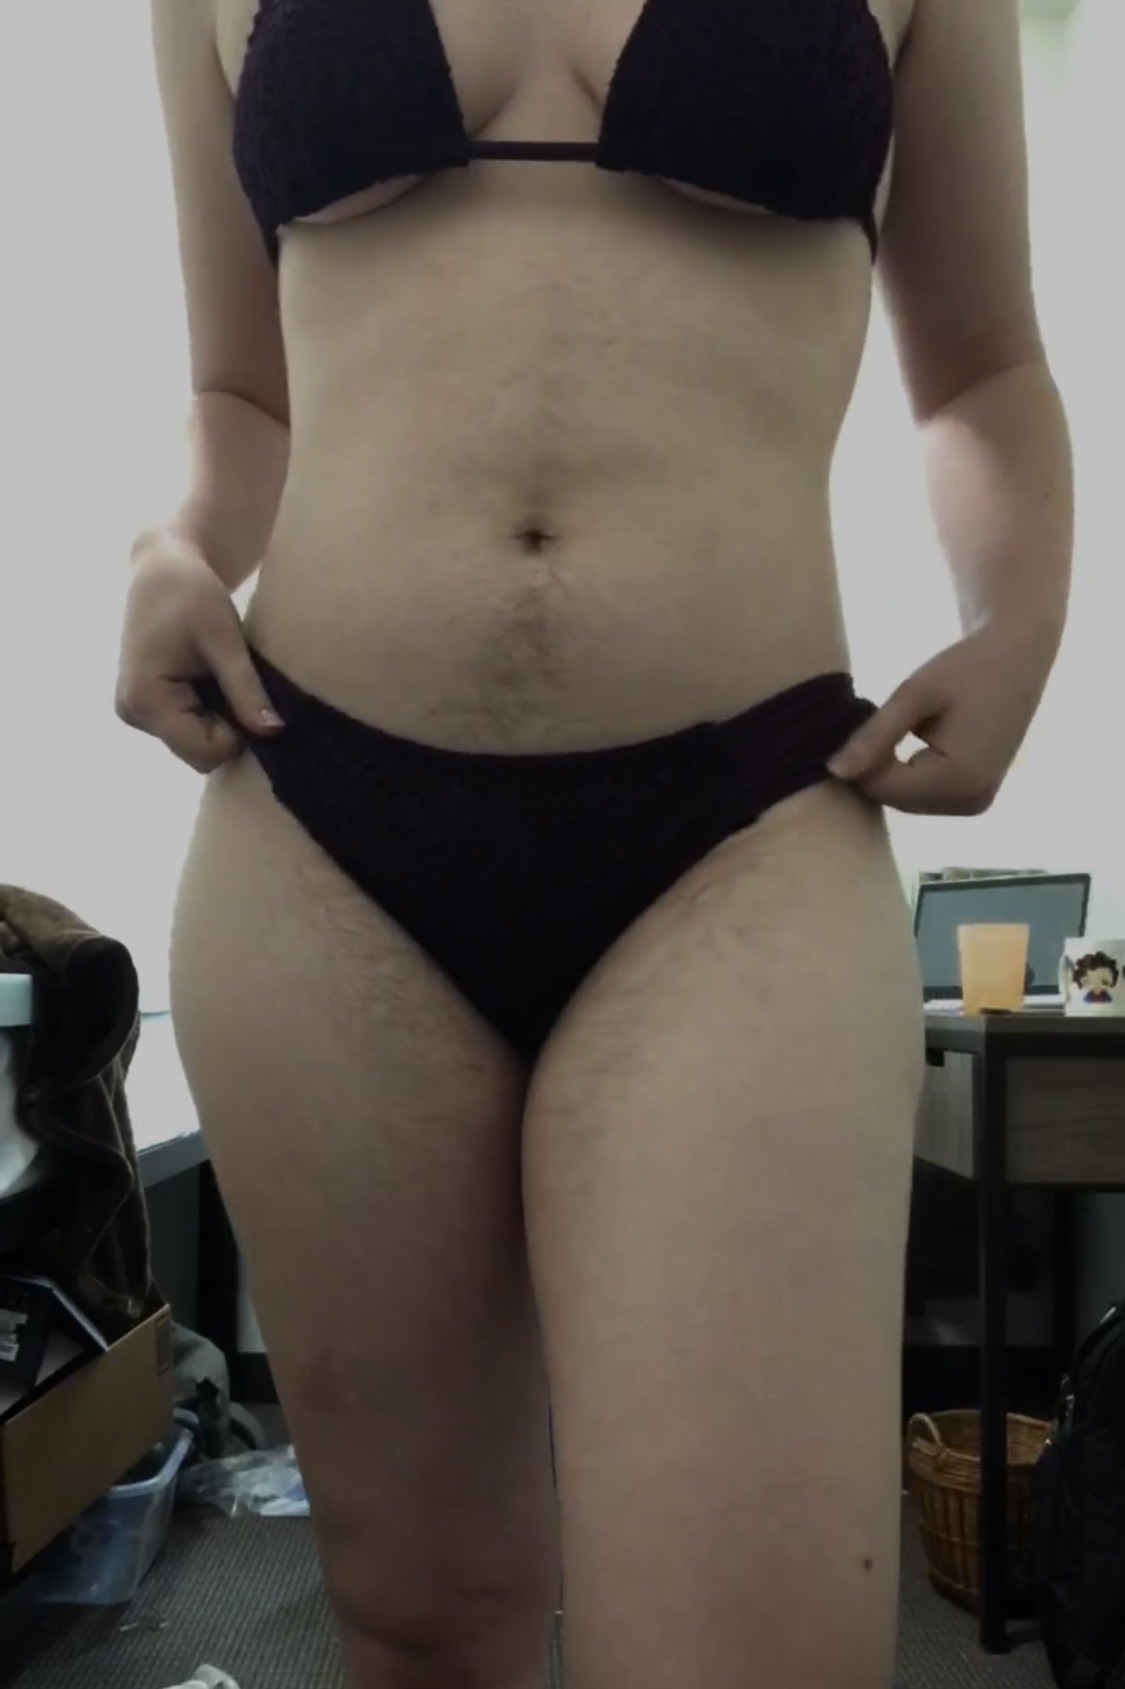 Sex certifiedfeedee:Piggy in a bikini before pictures